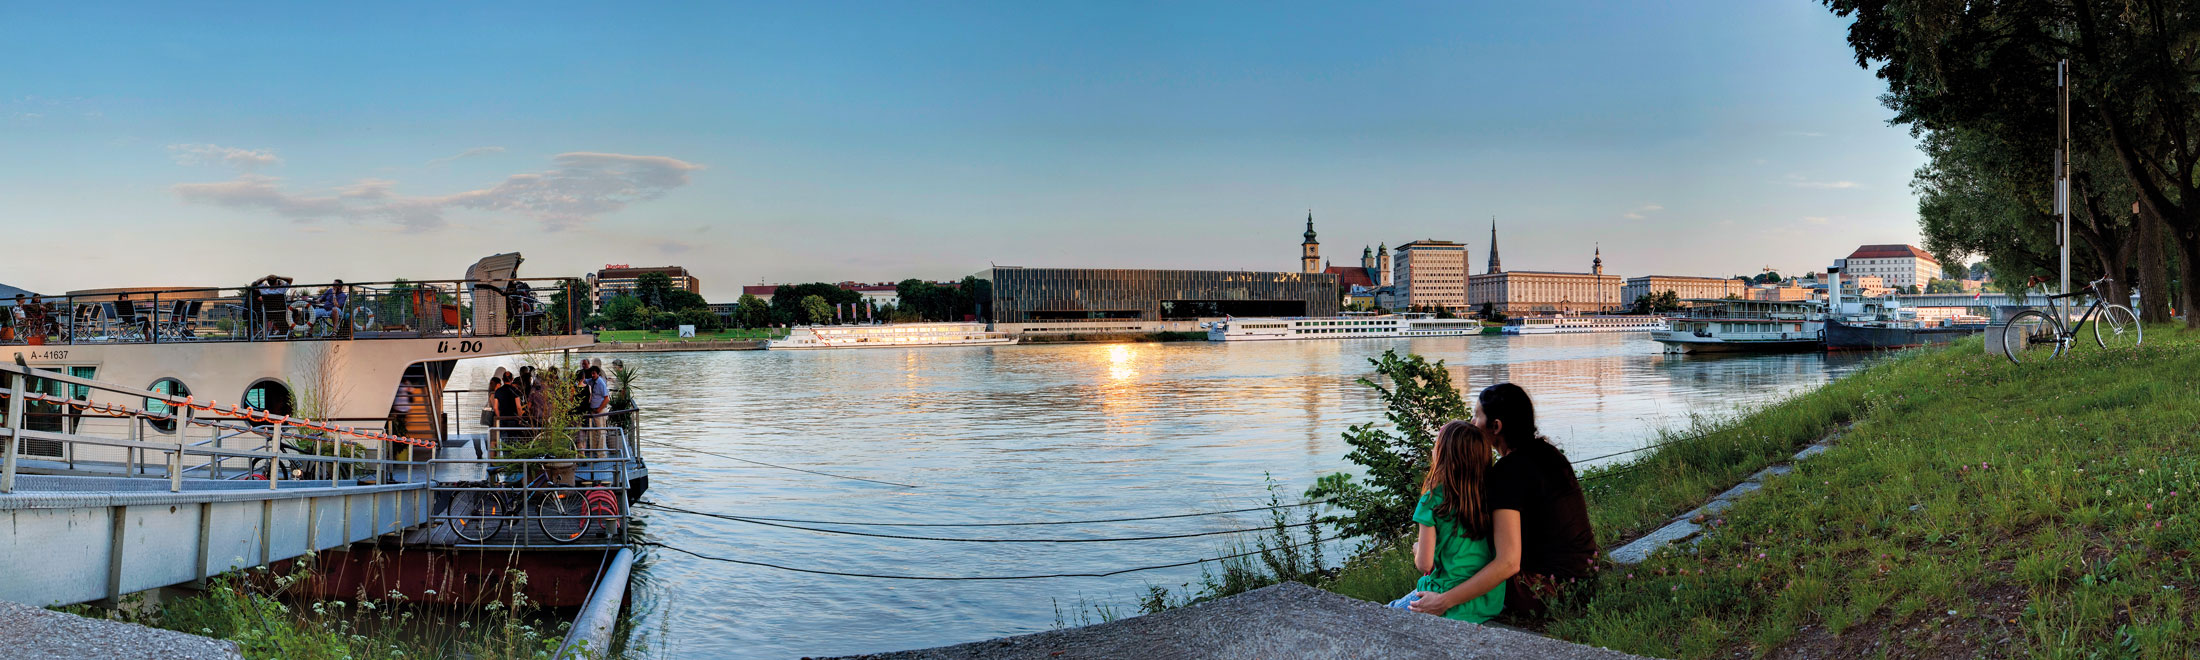 Sommermomente an der Donau genießen.